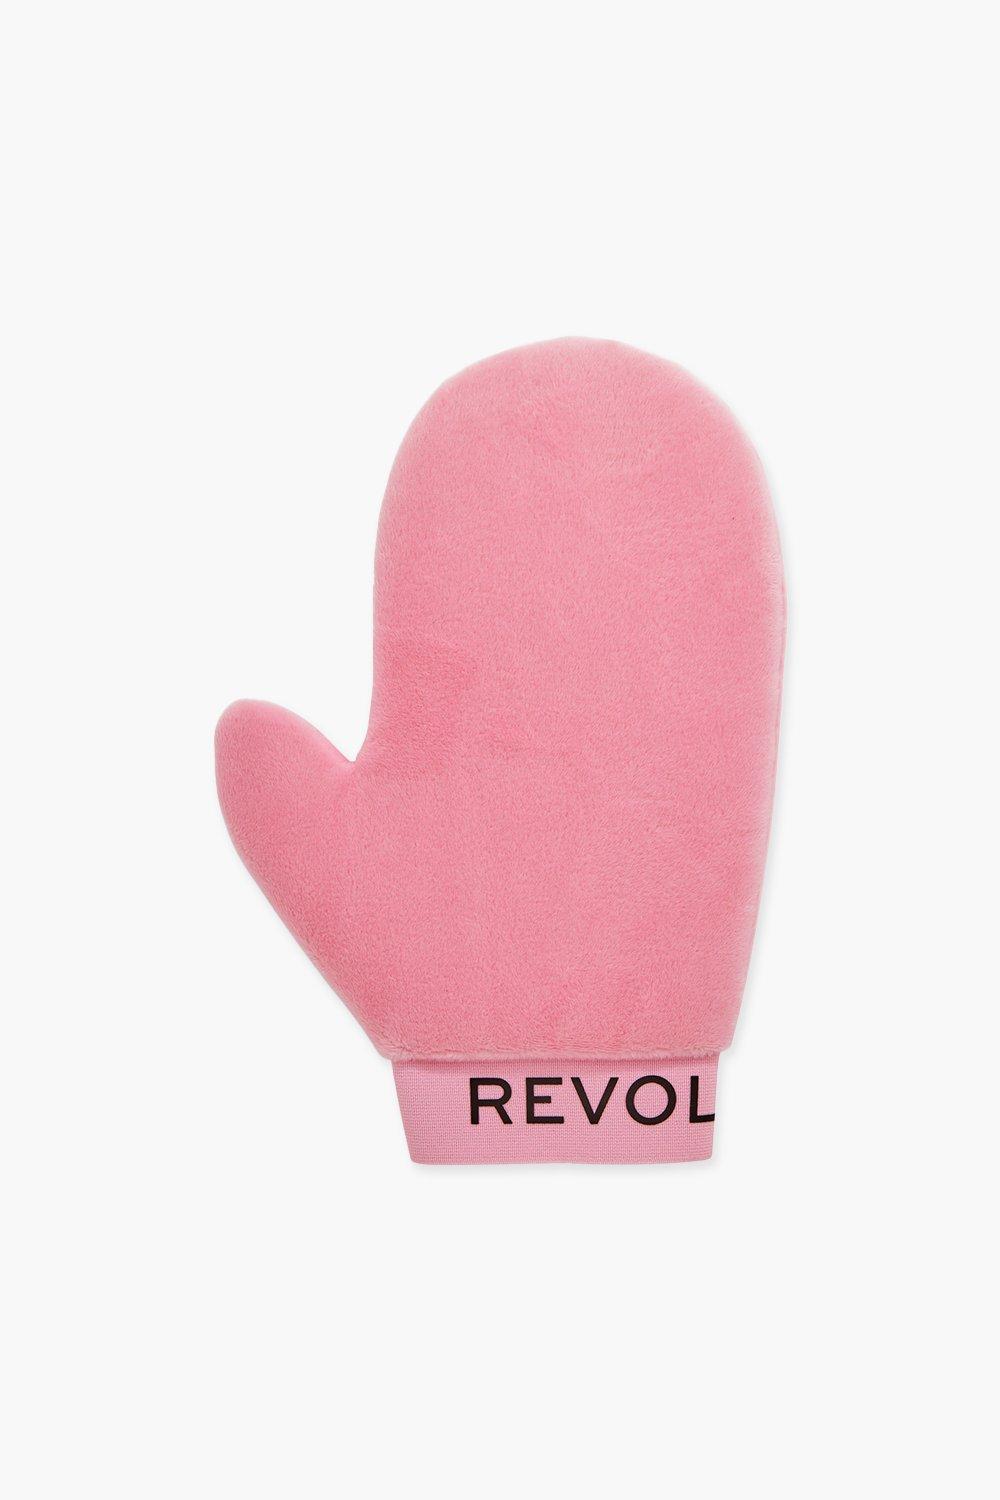 Revolution Beauty Zelfbruinings Want Roze, Pink